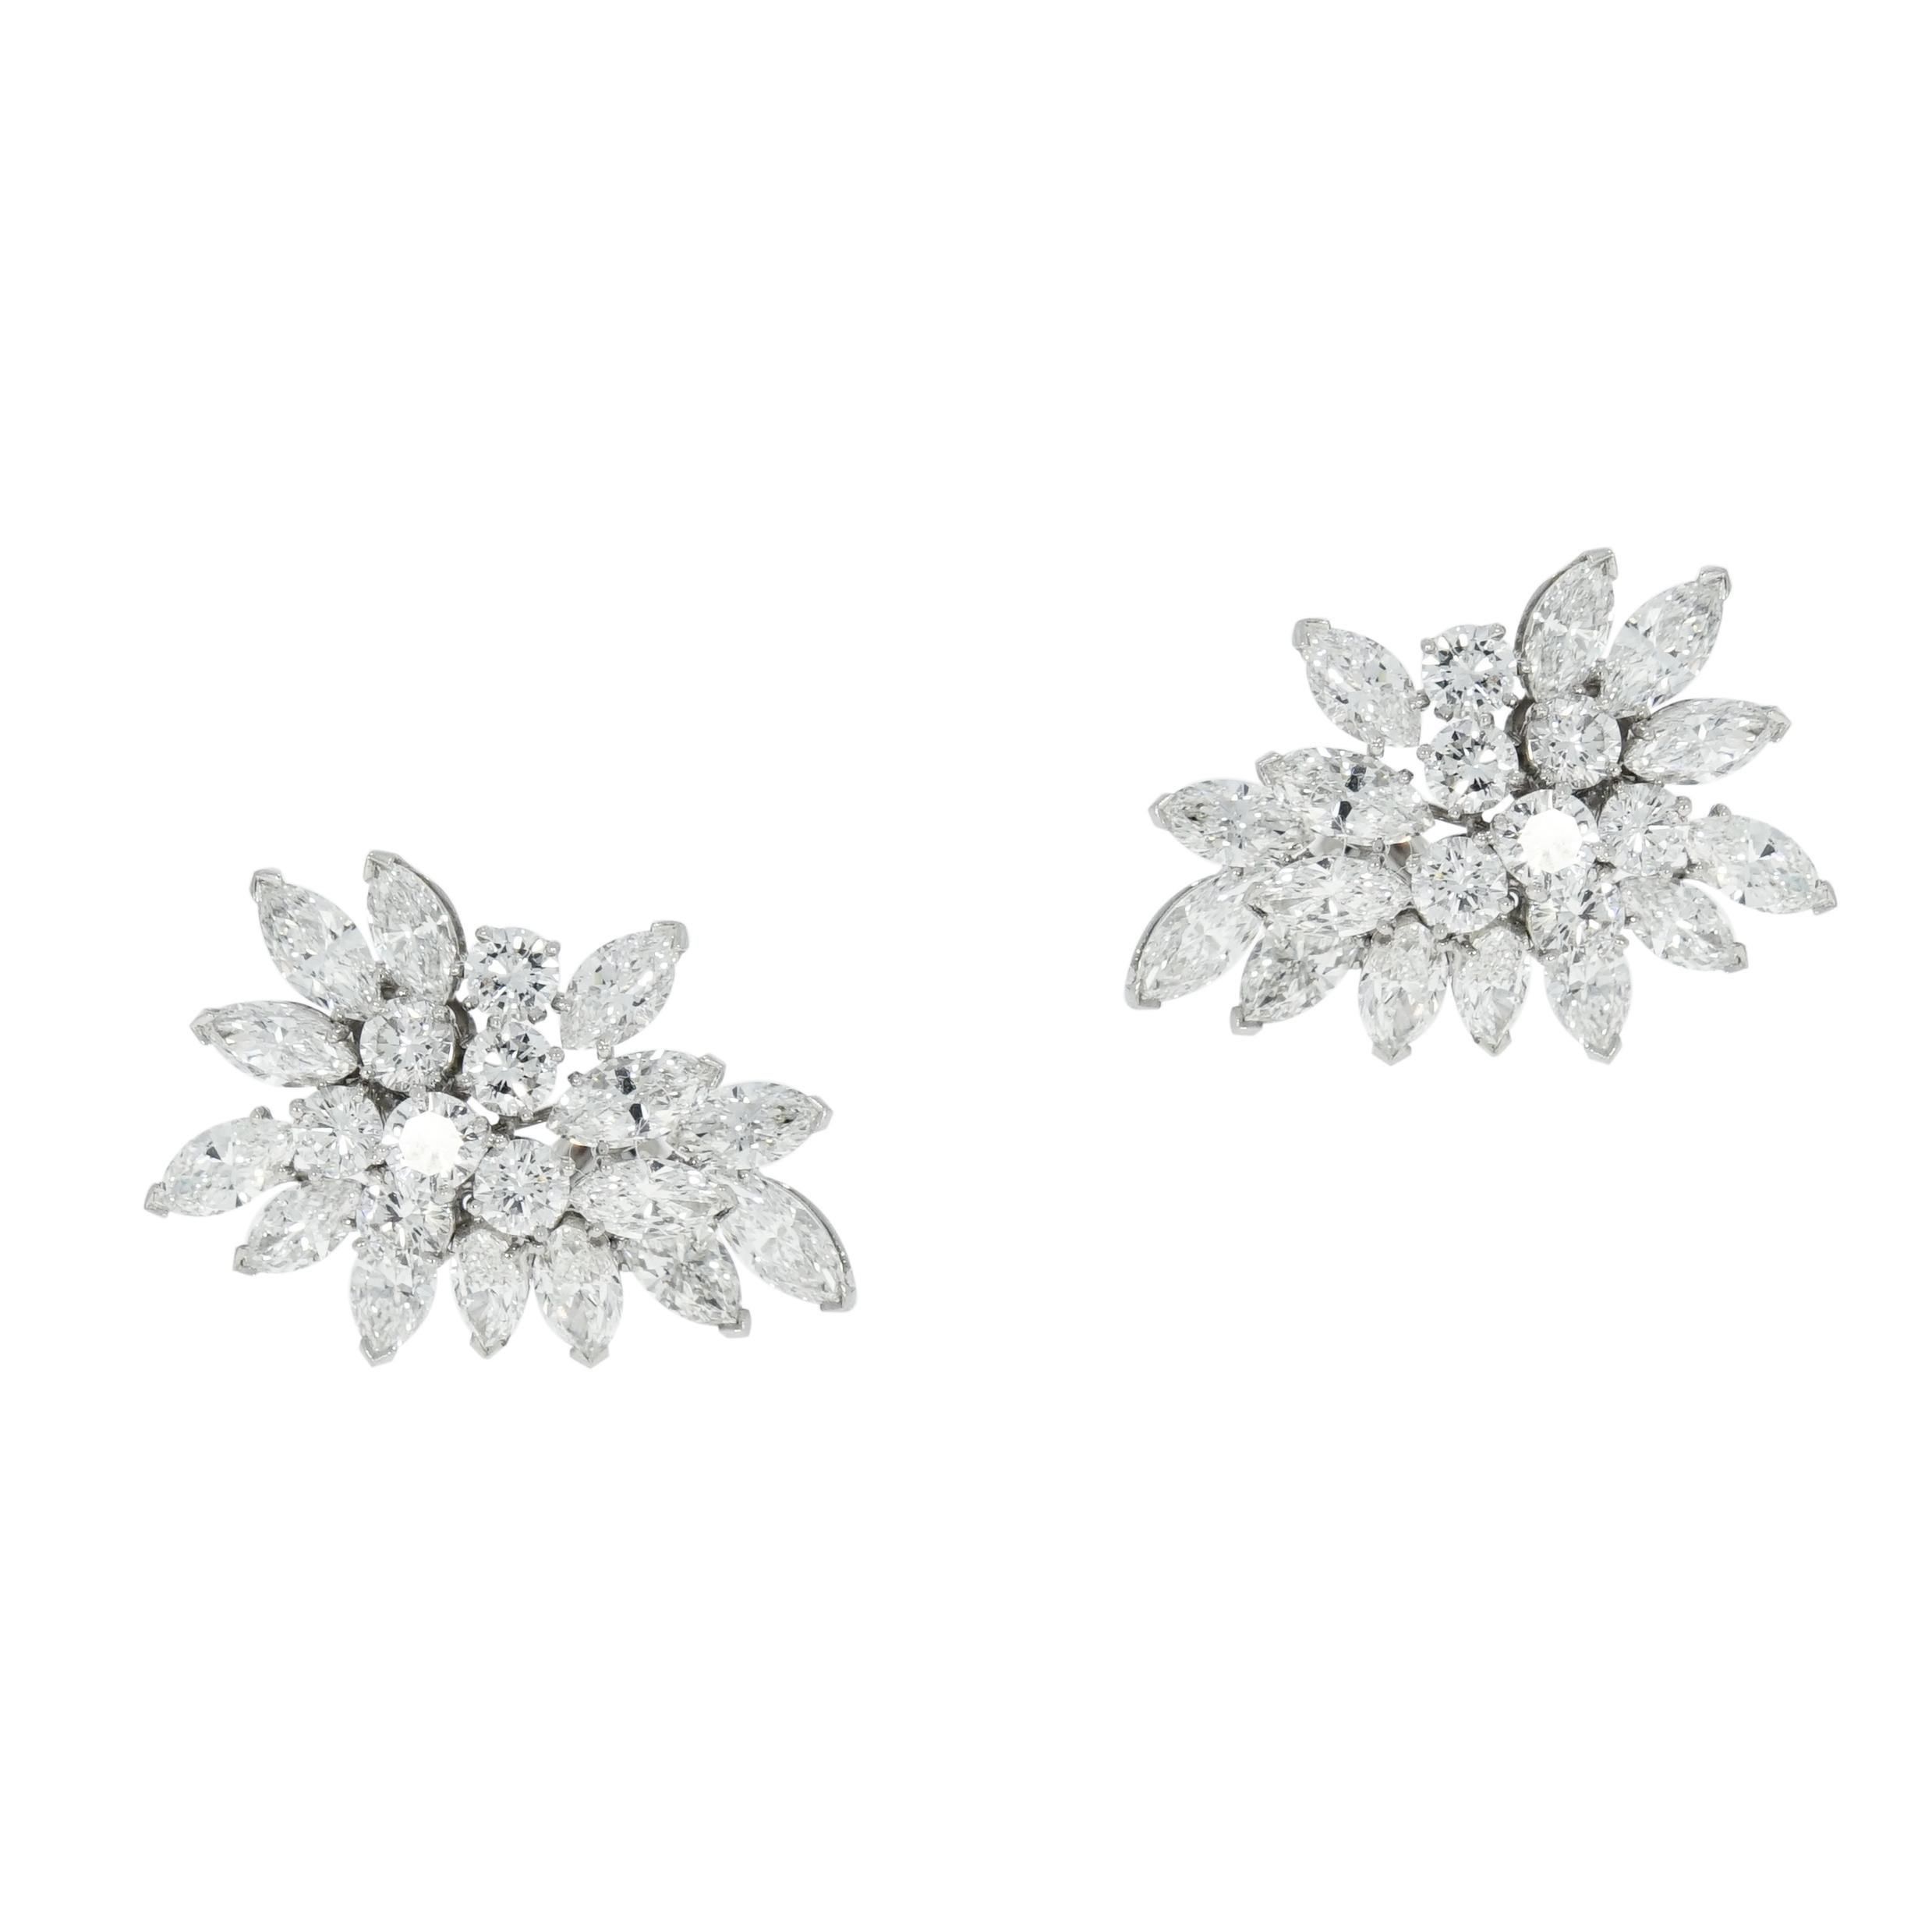 Van Cleef & Arpels hat sich seit langem in der Welt des Designerschmucks etabliert.
Und dieses klassische Paar Diamant-Cluster-Ohrringe ist einfach perfekt, um die Schönheit der Diamanten zu präsentieren. 
Bestehend aus 28 marquiseförmigen und 14